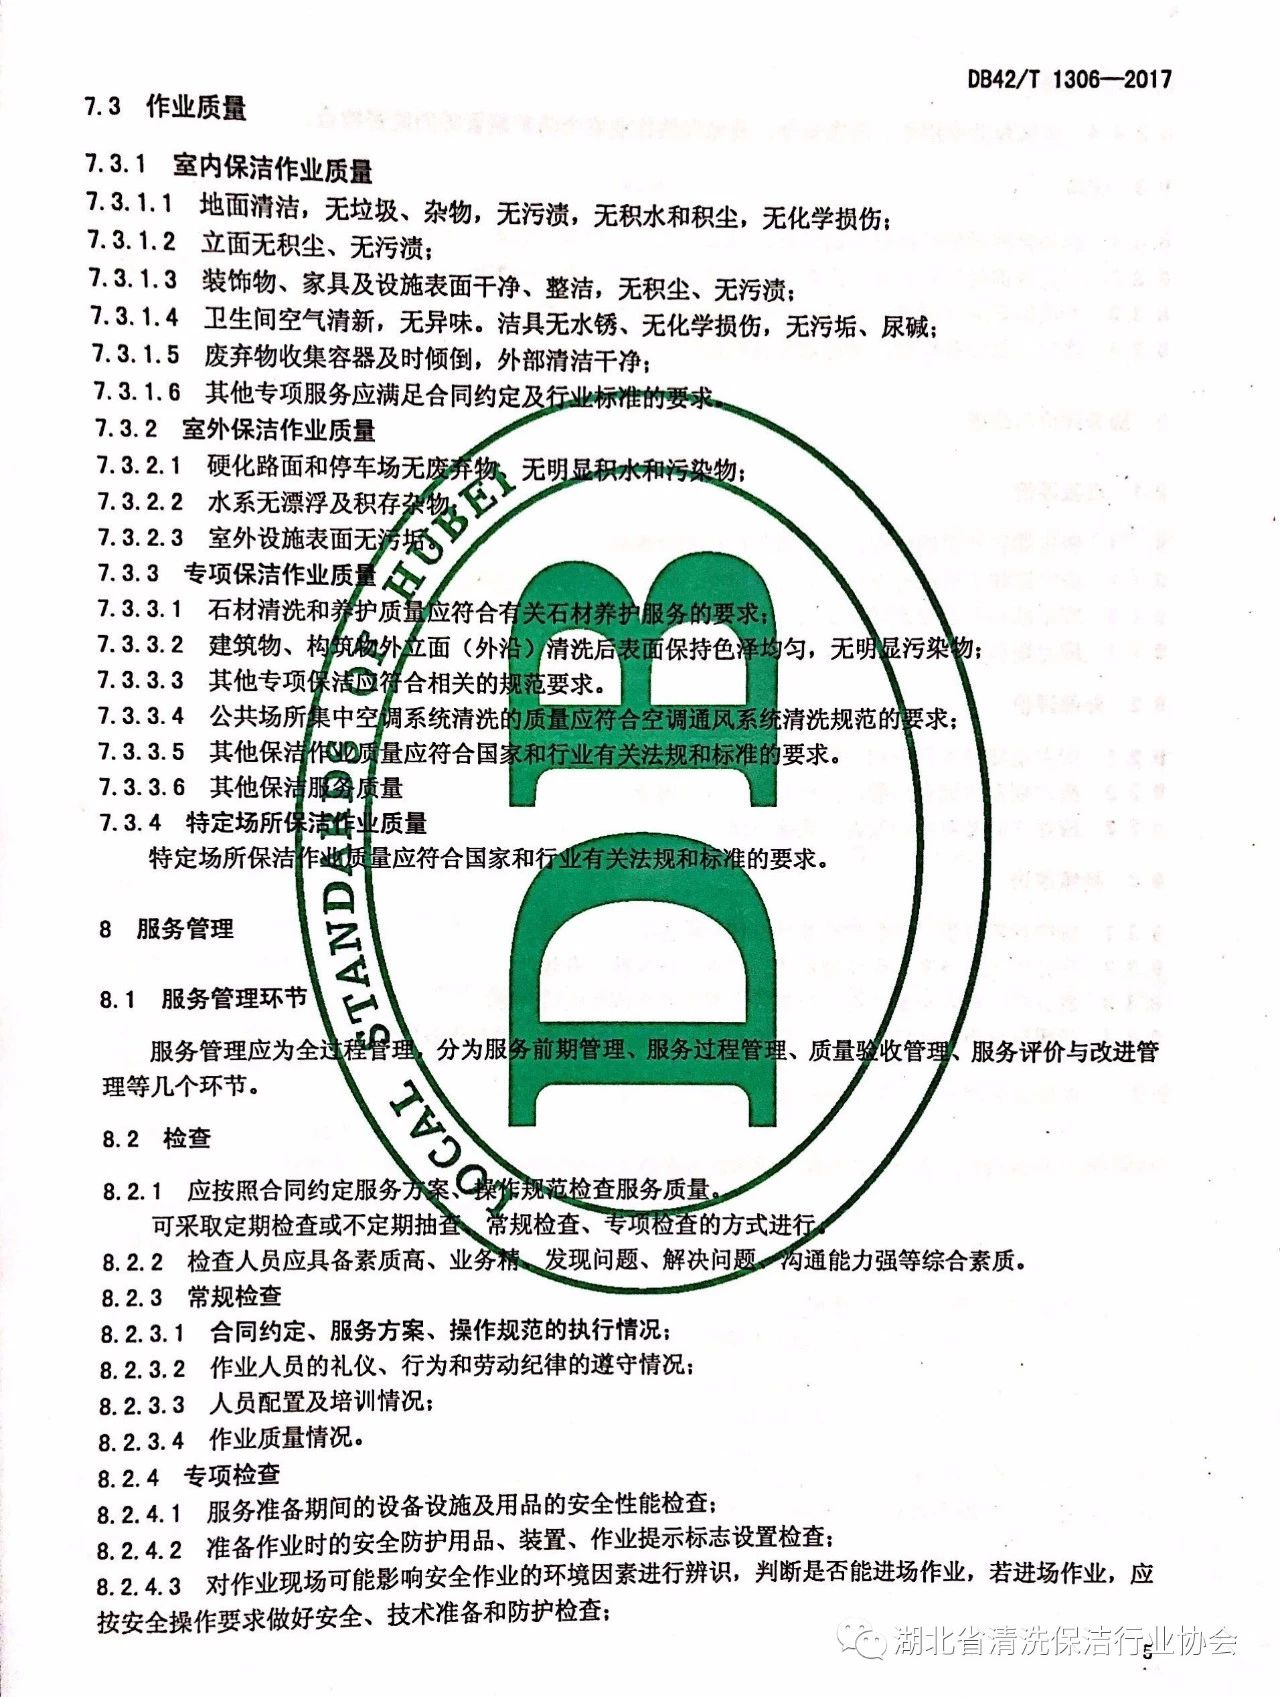 湖北省清洗保洁行业协会第一部地方标准《保洁服务通则》颁布实施9.jpg